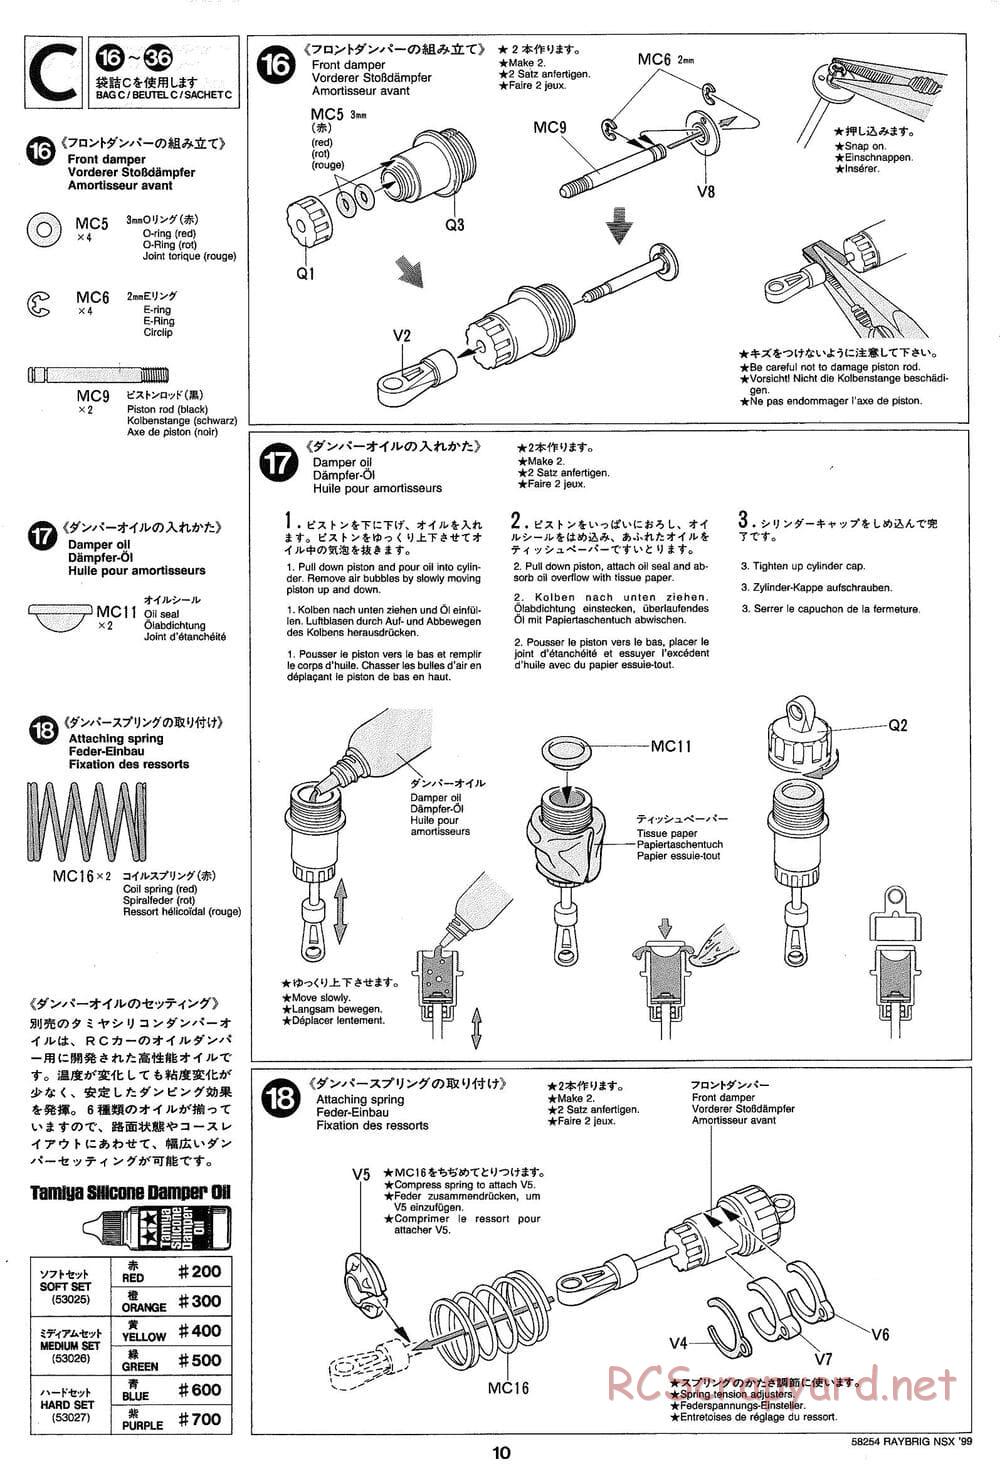 Tamiya - Raybrig NSX 99 - TA-03R Chassis - Manual - Page 10